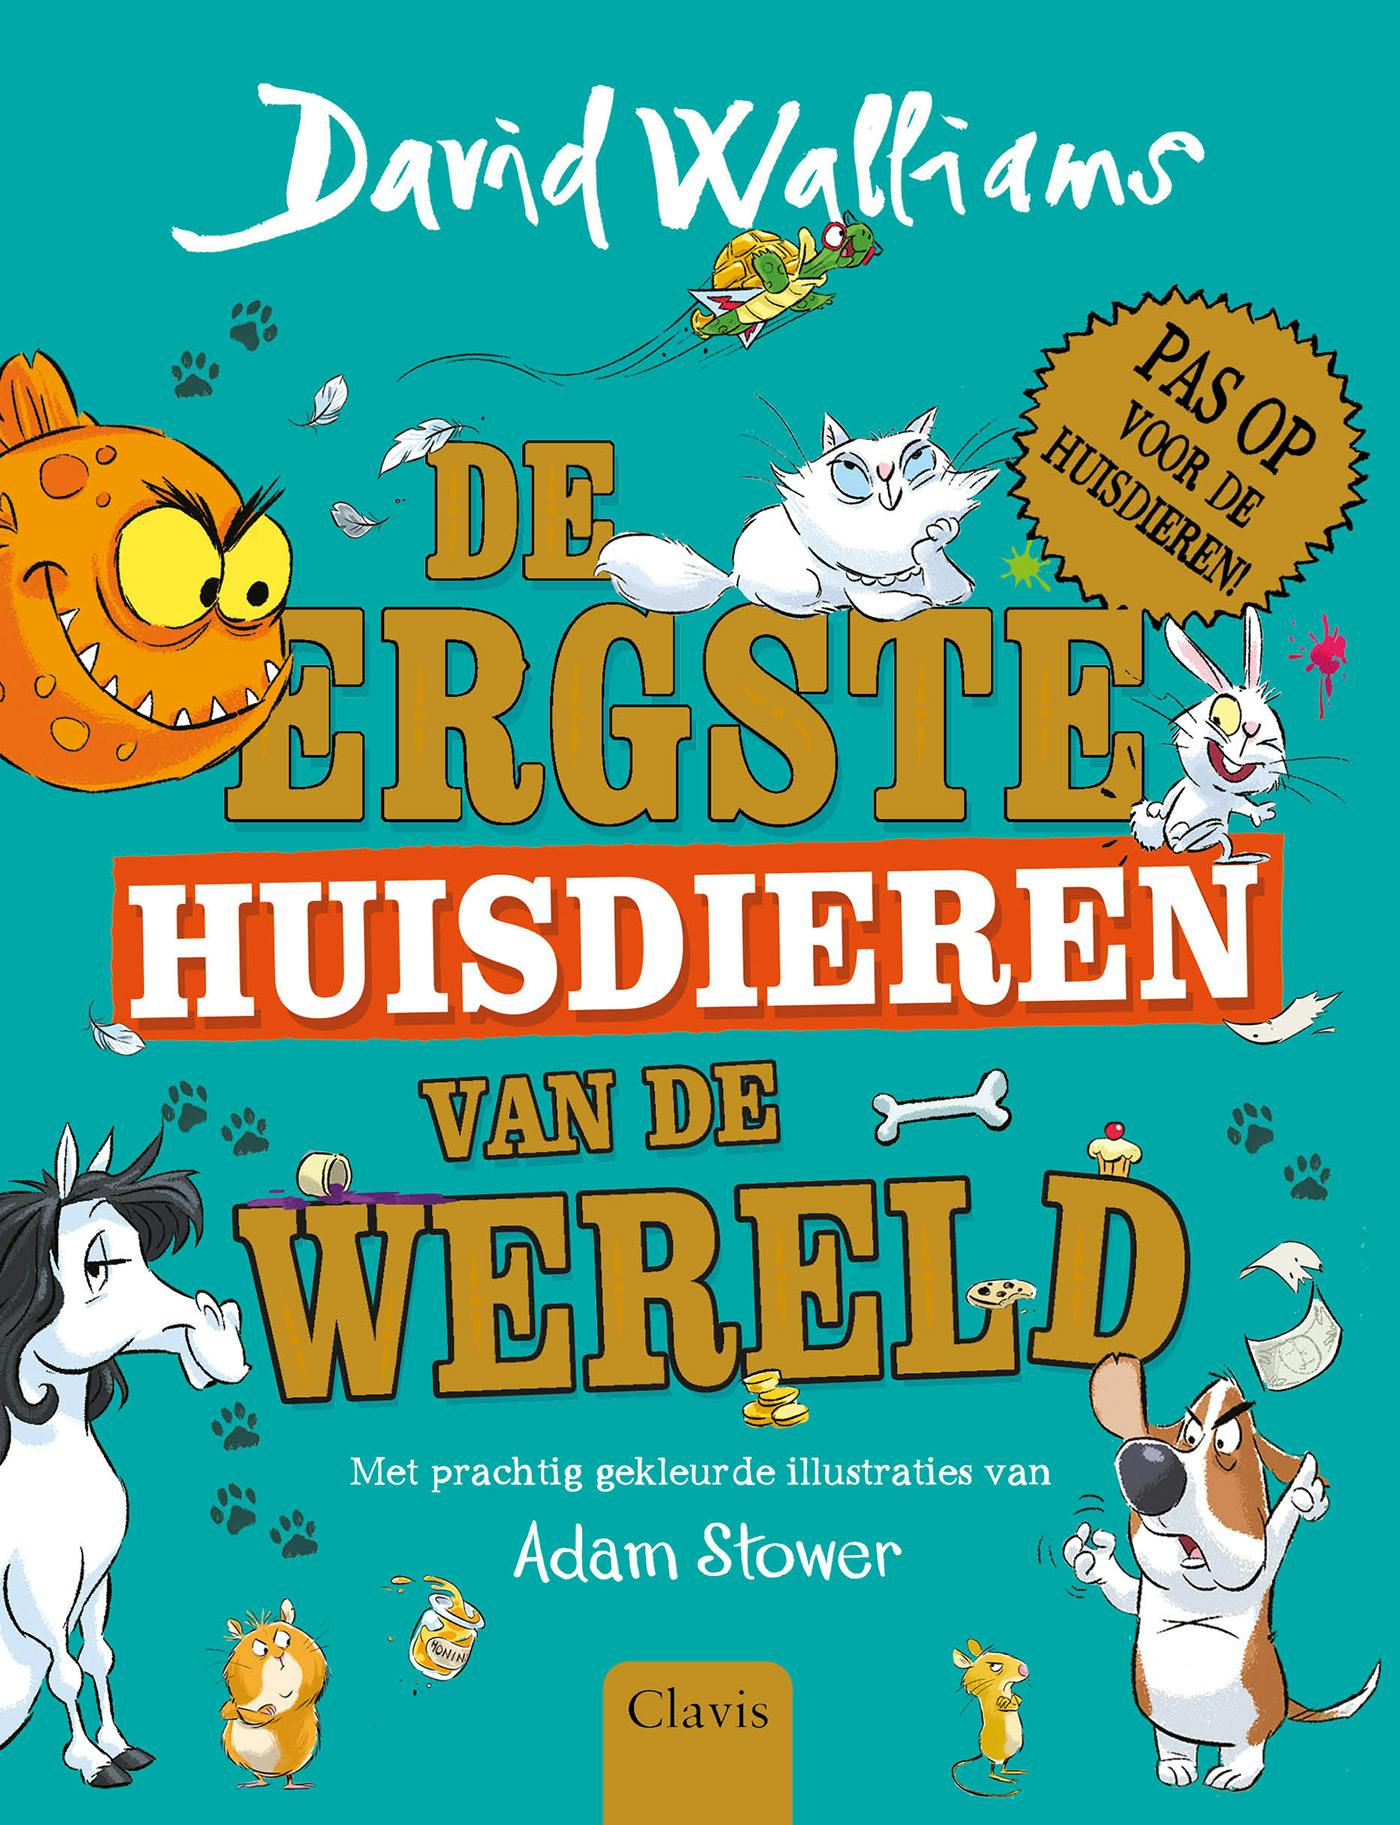 ISBN 9789044845594
Titel De ergste huisdieren van de wereld
Auteur David Walliams
Illustrator Adam Stower